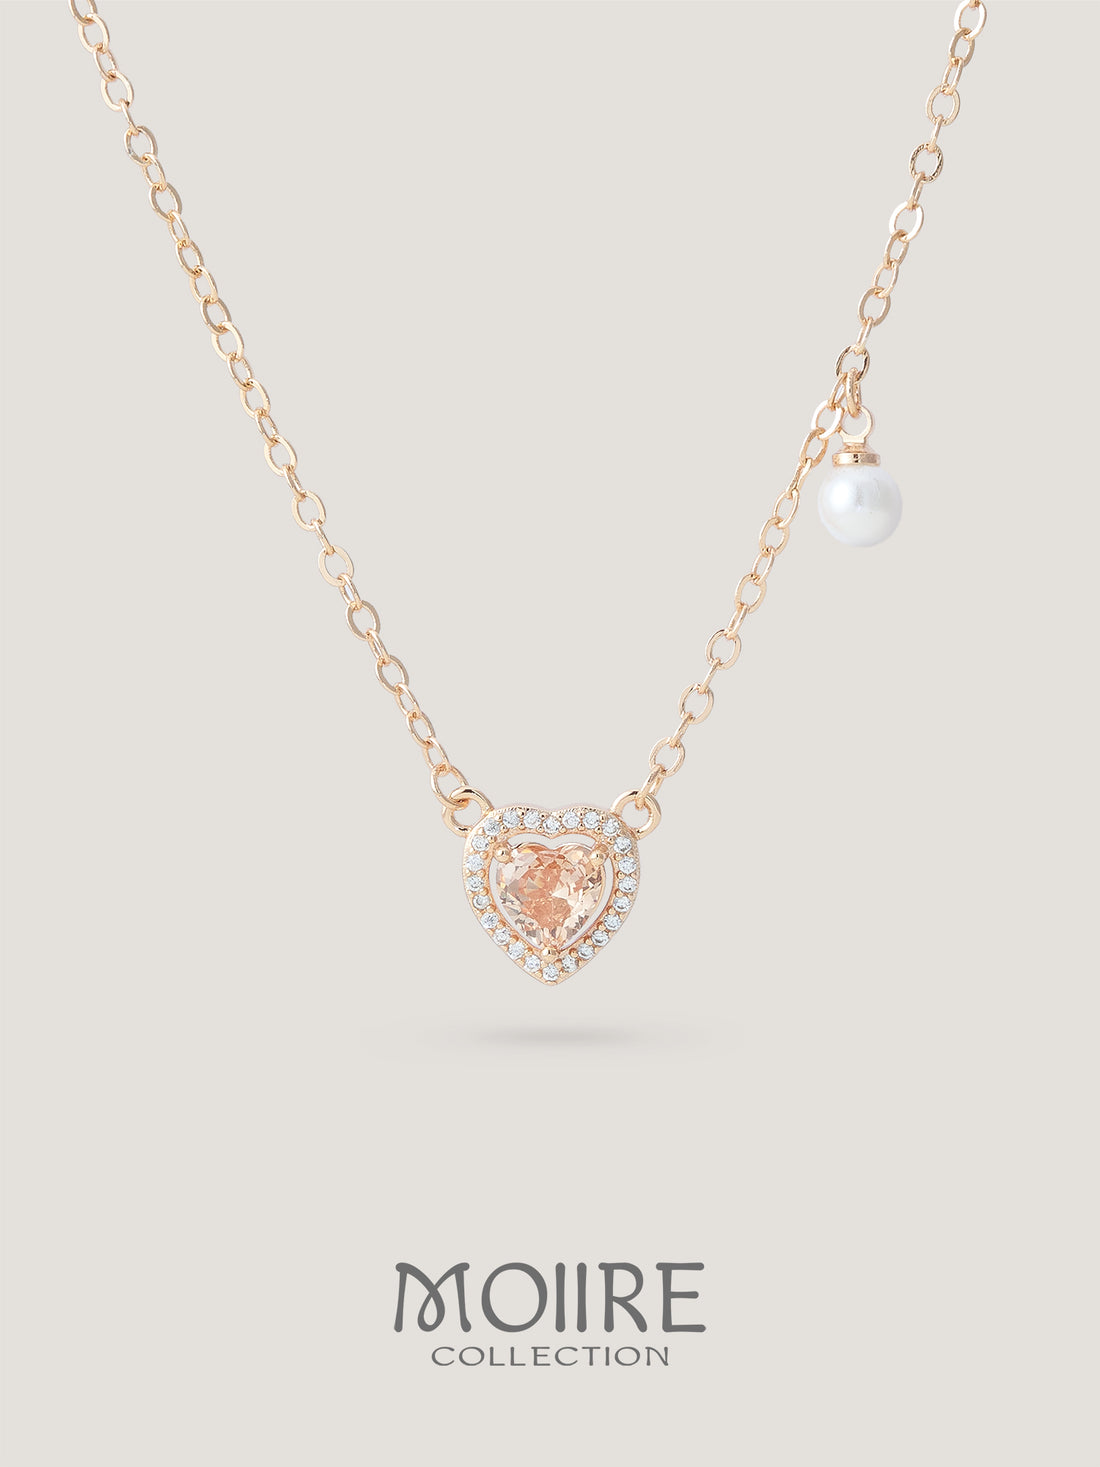 Moiire Jewelry | 心繫於你